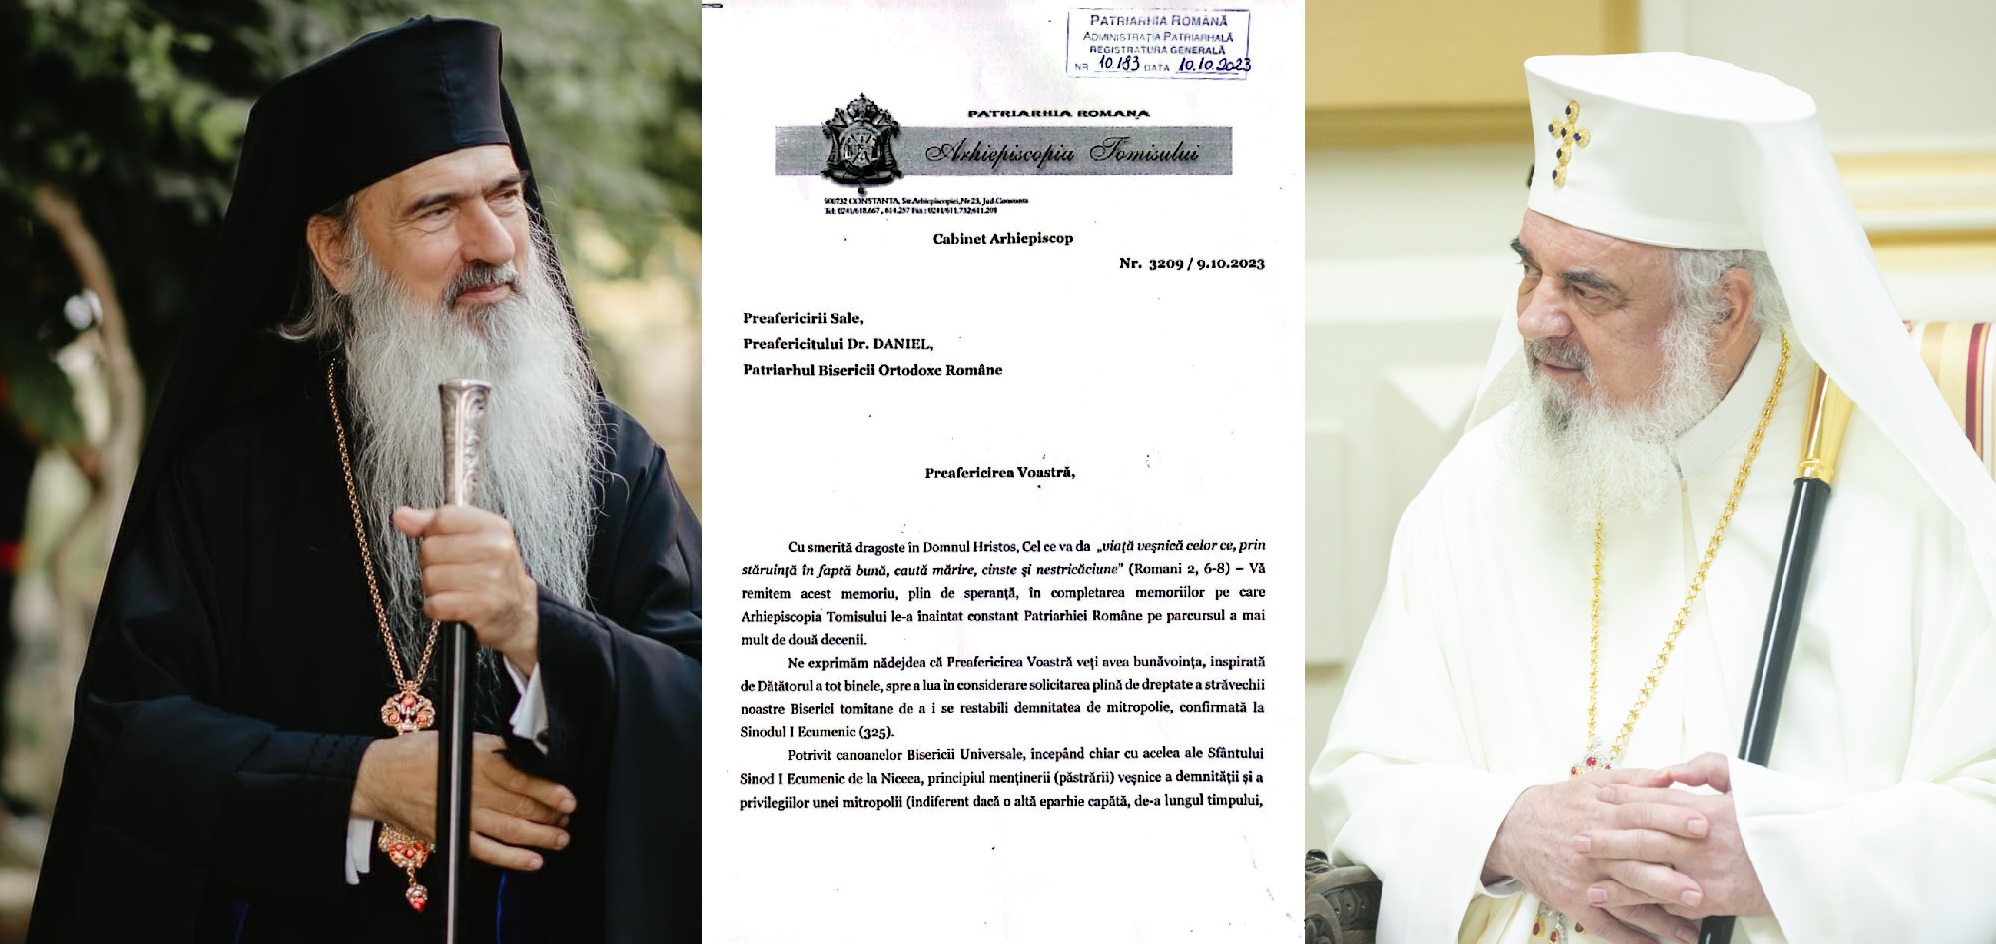 IPS Teodosie i-a cerut oficial PF Daniel reactivarea Mitropoliei Tomisului - document depus în atenția Sf. Sinod / ABC Ortodox susține demersul